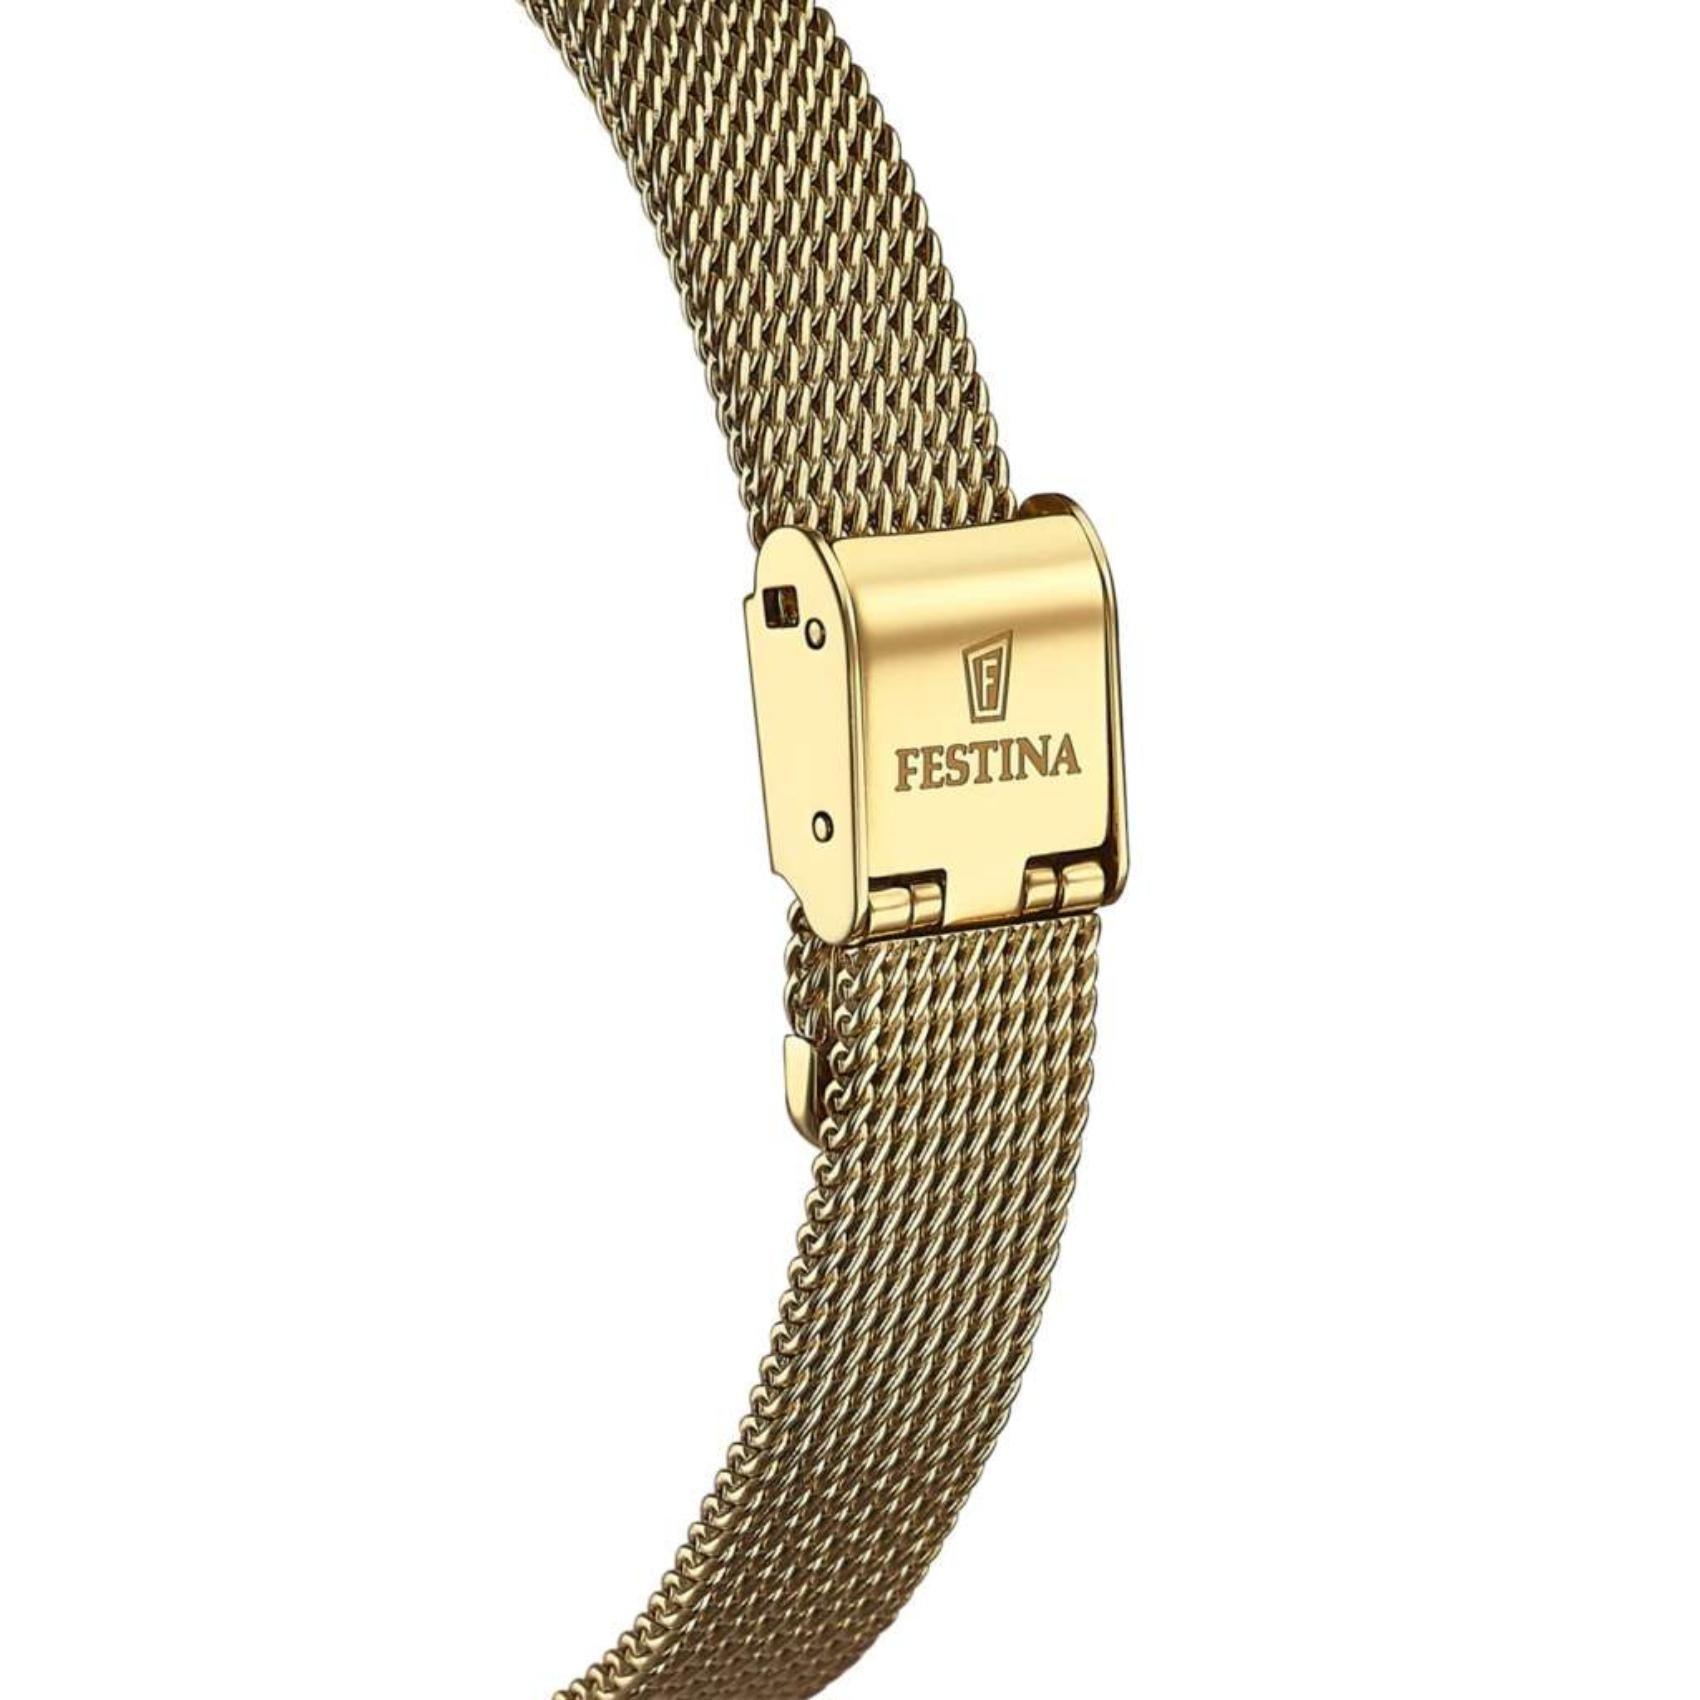 Ρολόι Festina Mademoiselle F20495/1 με χρυσό ατσάλινο μπρασελέ, άσπρο καντραν με ζιργκόν, μηχανισμό μπαταρίας και στρογγυλό σχήμα με διάμετρο 30mm αδιάβροχο στις 5ΑΤΜ-50Μ.